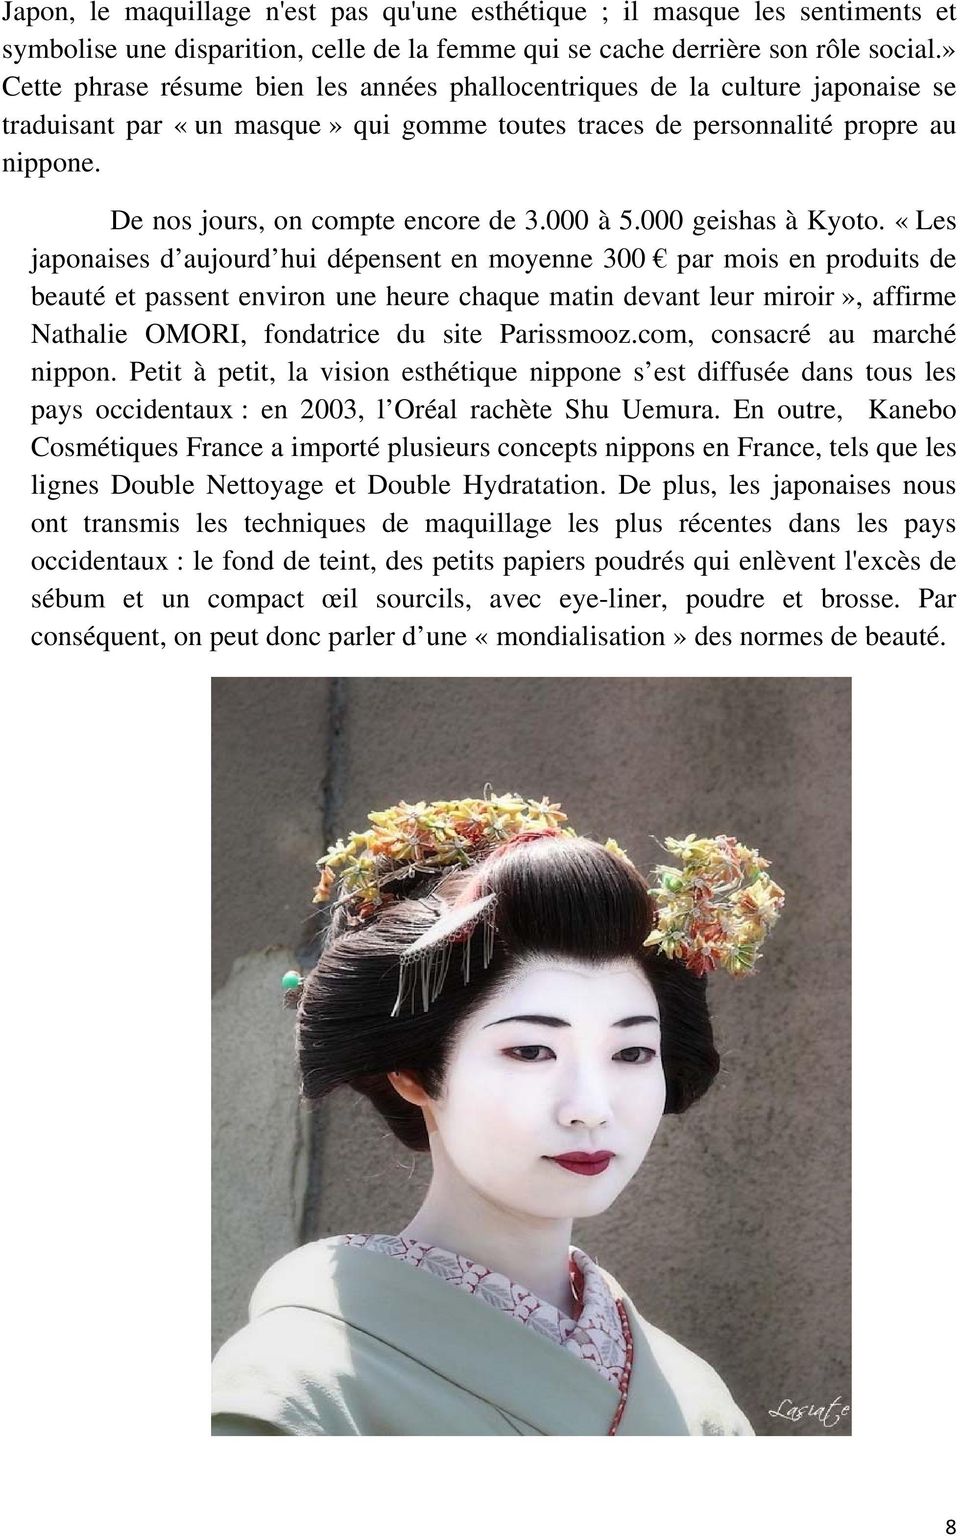 De nos jours, on compte encore de 3.000 à 5.000 geishas à Kyoto.